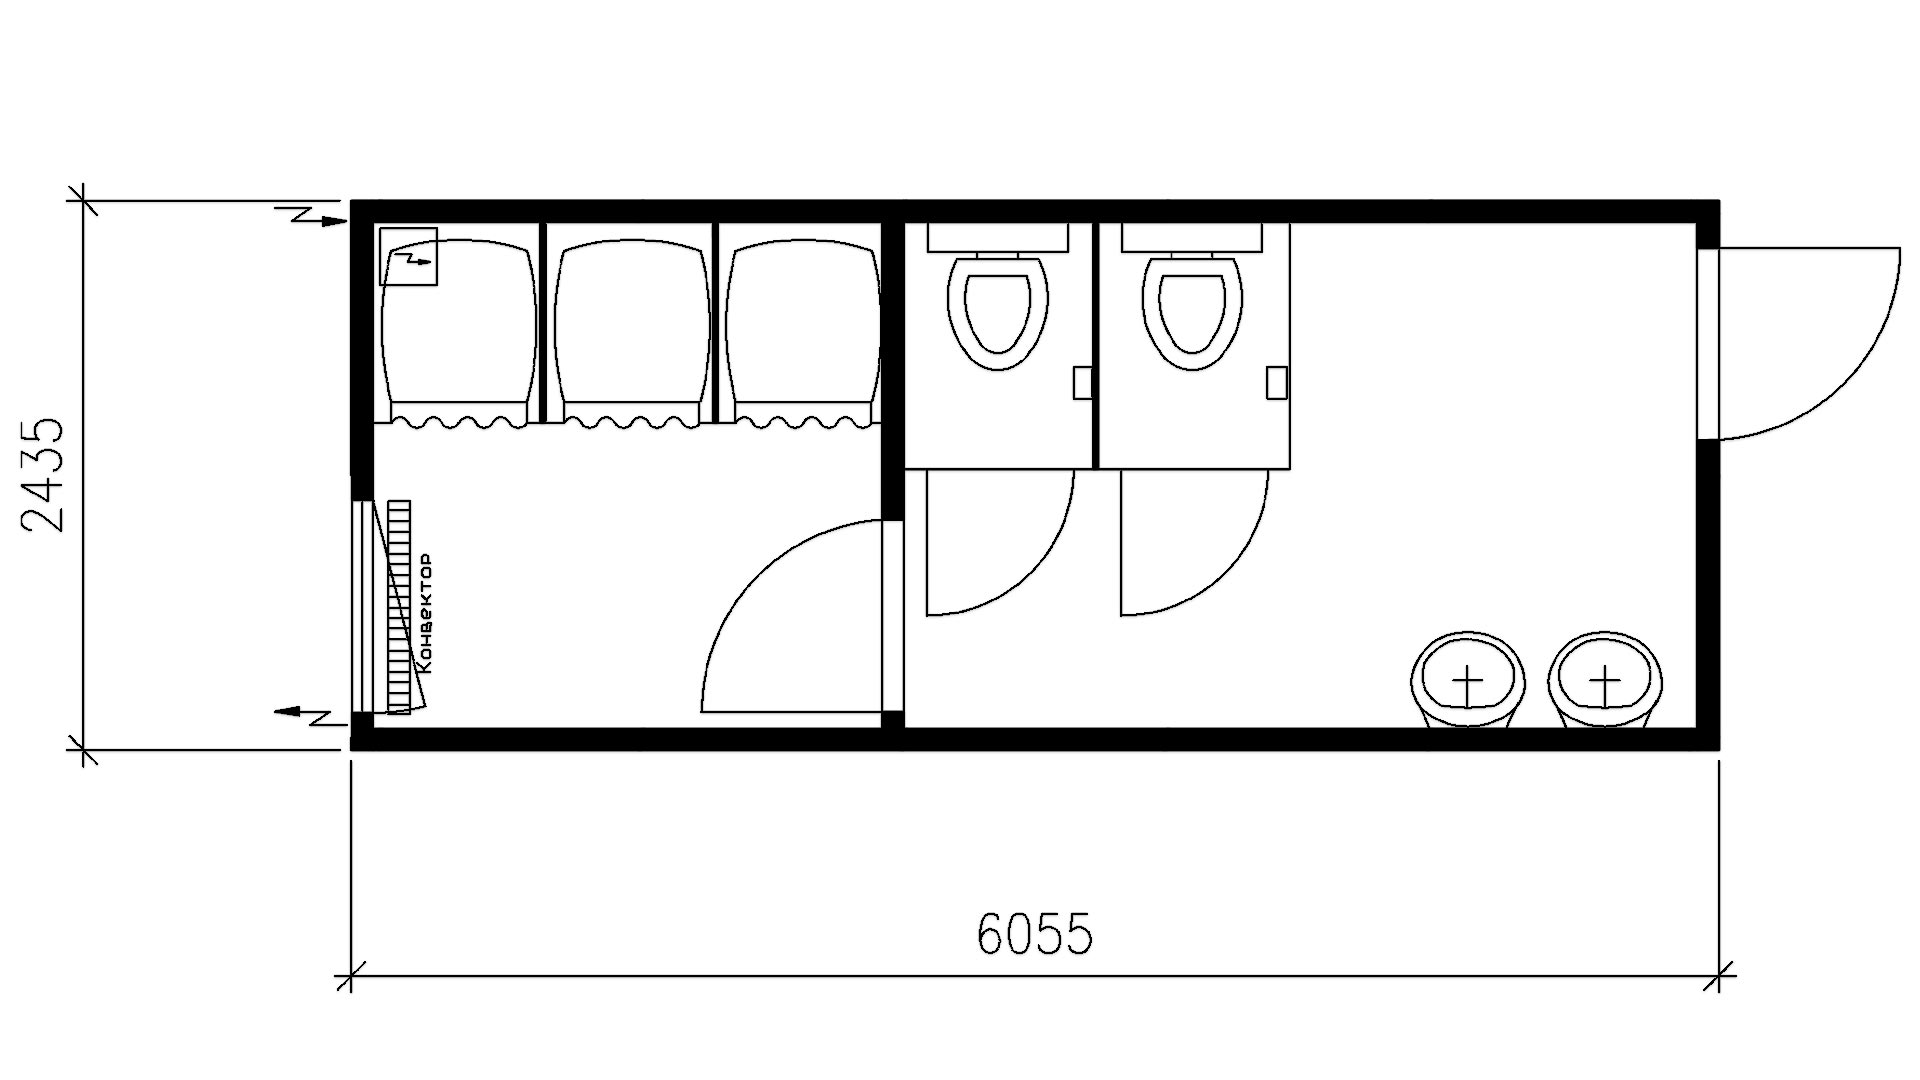 Планировка туалет/душ 2 секции (3 душевых кабинки, 2 унитаза, 2 умывальника) 20-футов, размеры: 6055/2435/2750 (Д/Ш/В) в мм